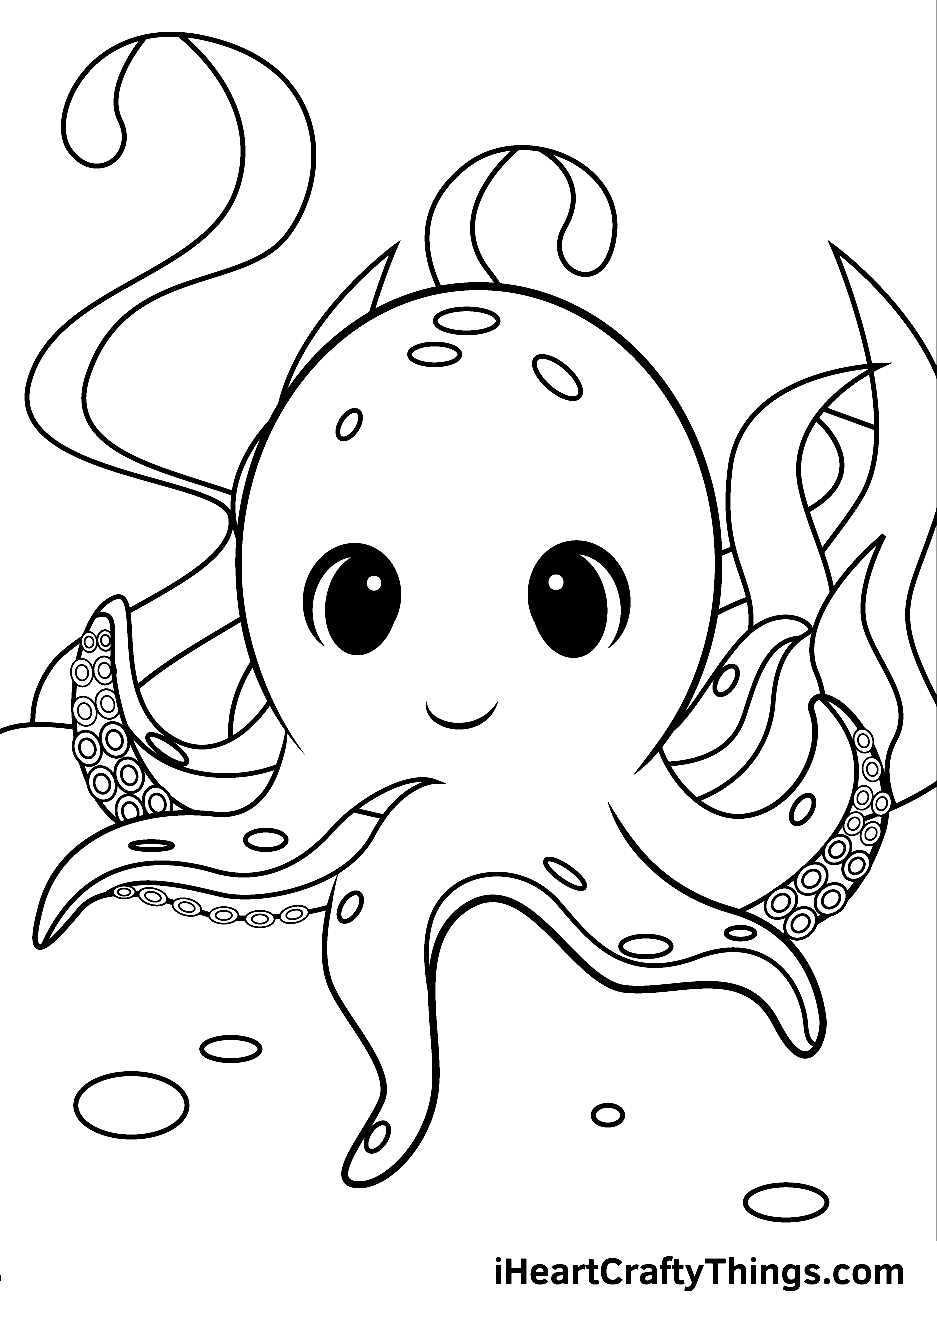 Милый осьминог из мультфильма "Осьминог"